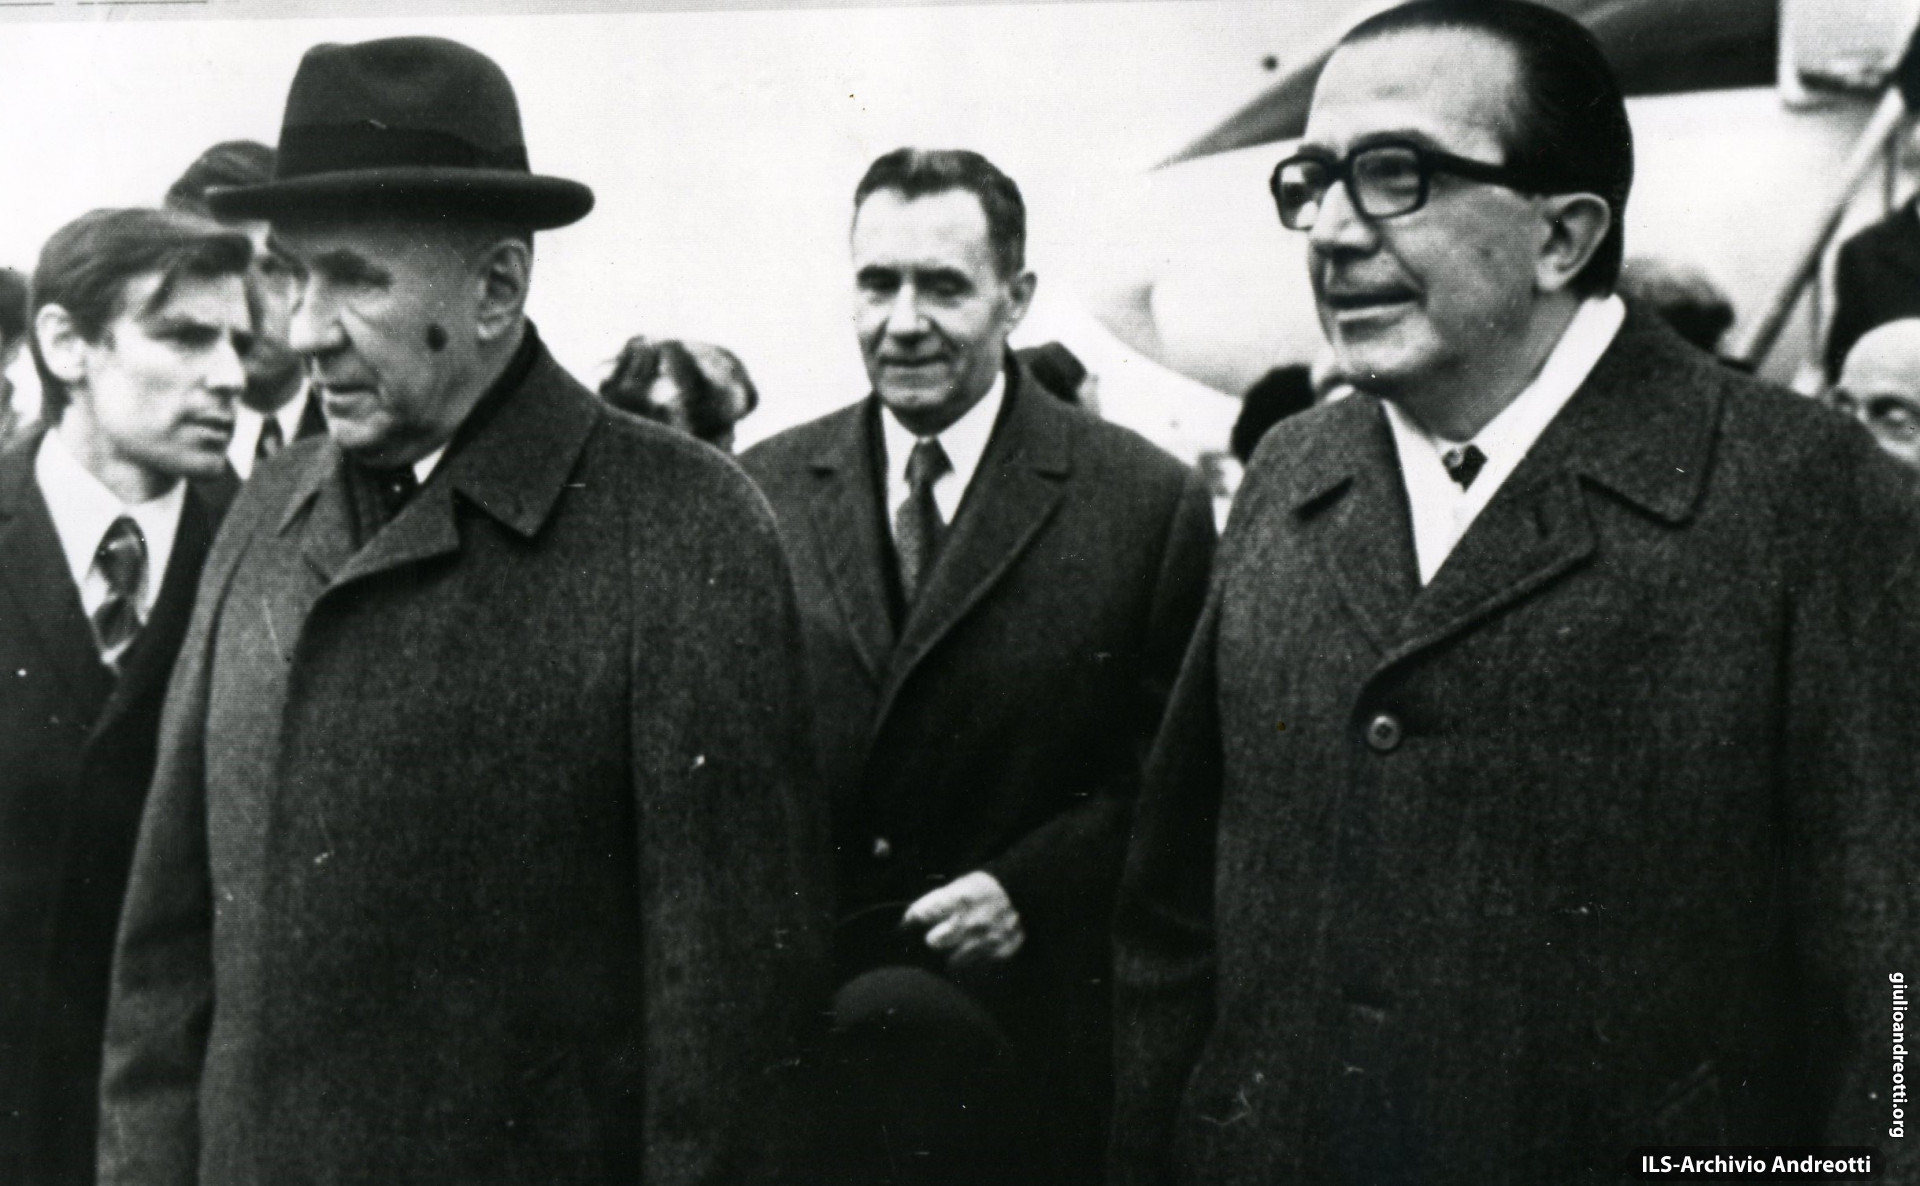 24 ottobre 1972. Visita ufficiale in URSS. Andreotti è accolto dal primo ministro sovietico Kosygin. In seconda fila, il ministro degli esteri Andrei Gromiko.